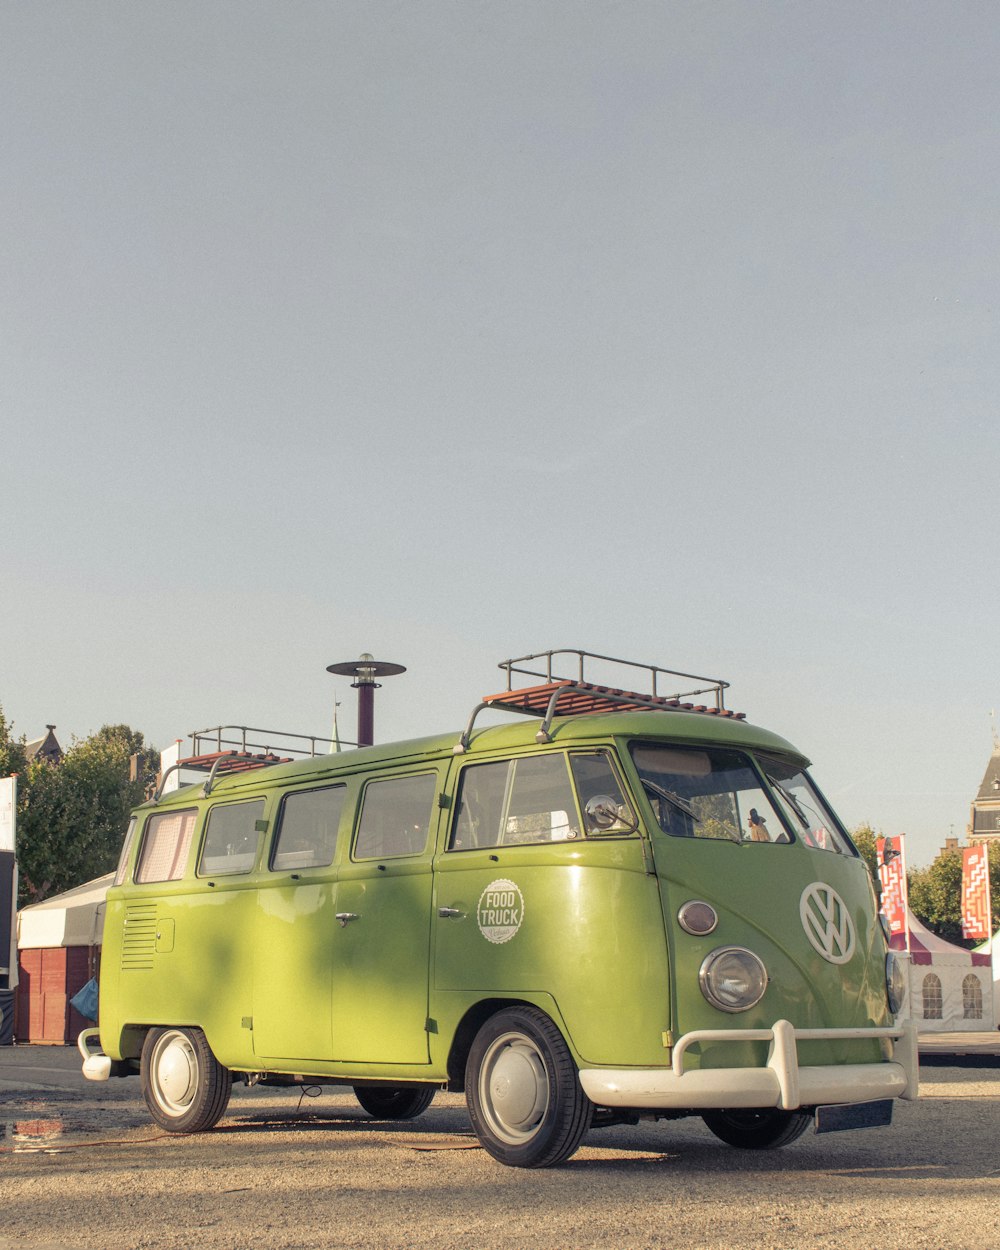 Grüner Volkswagen T-2 Van parkt tagsüber auf grauer Betonstraße